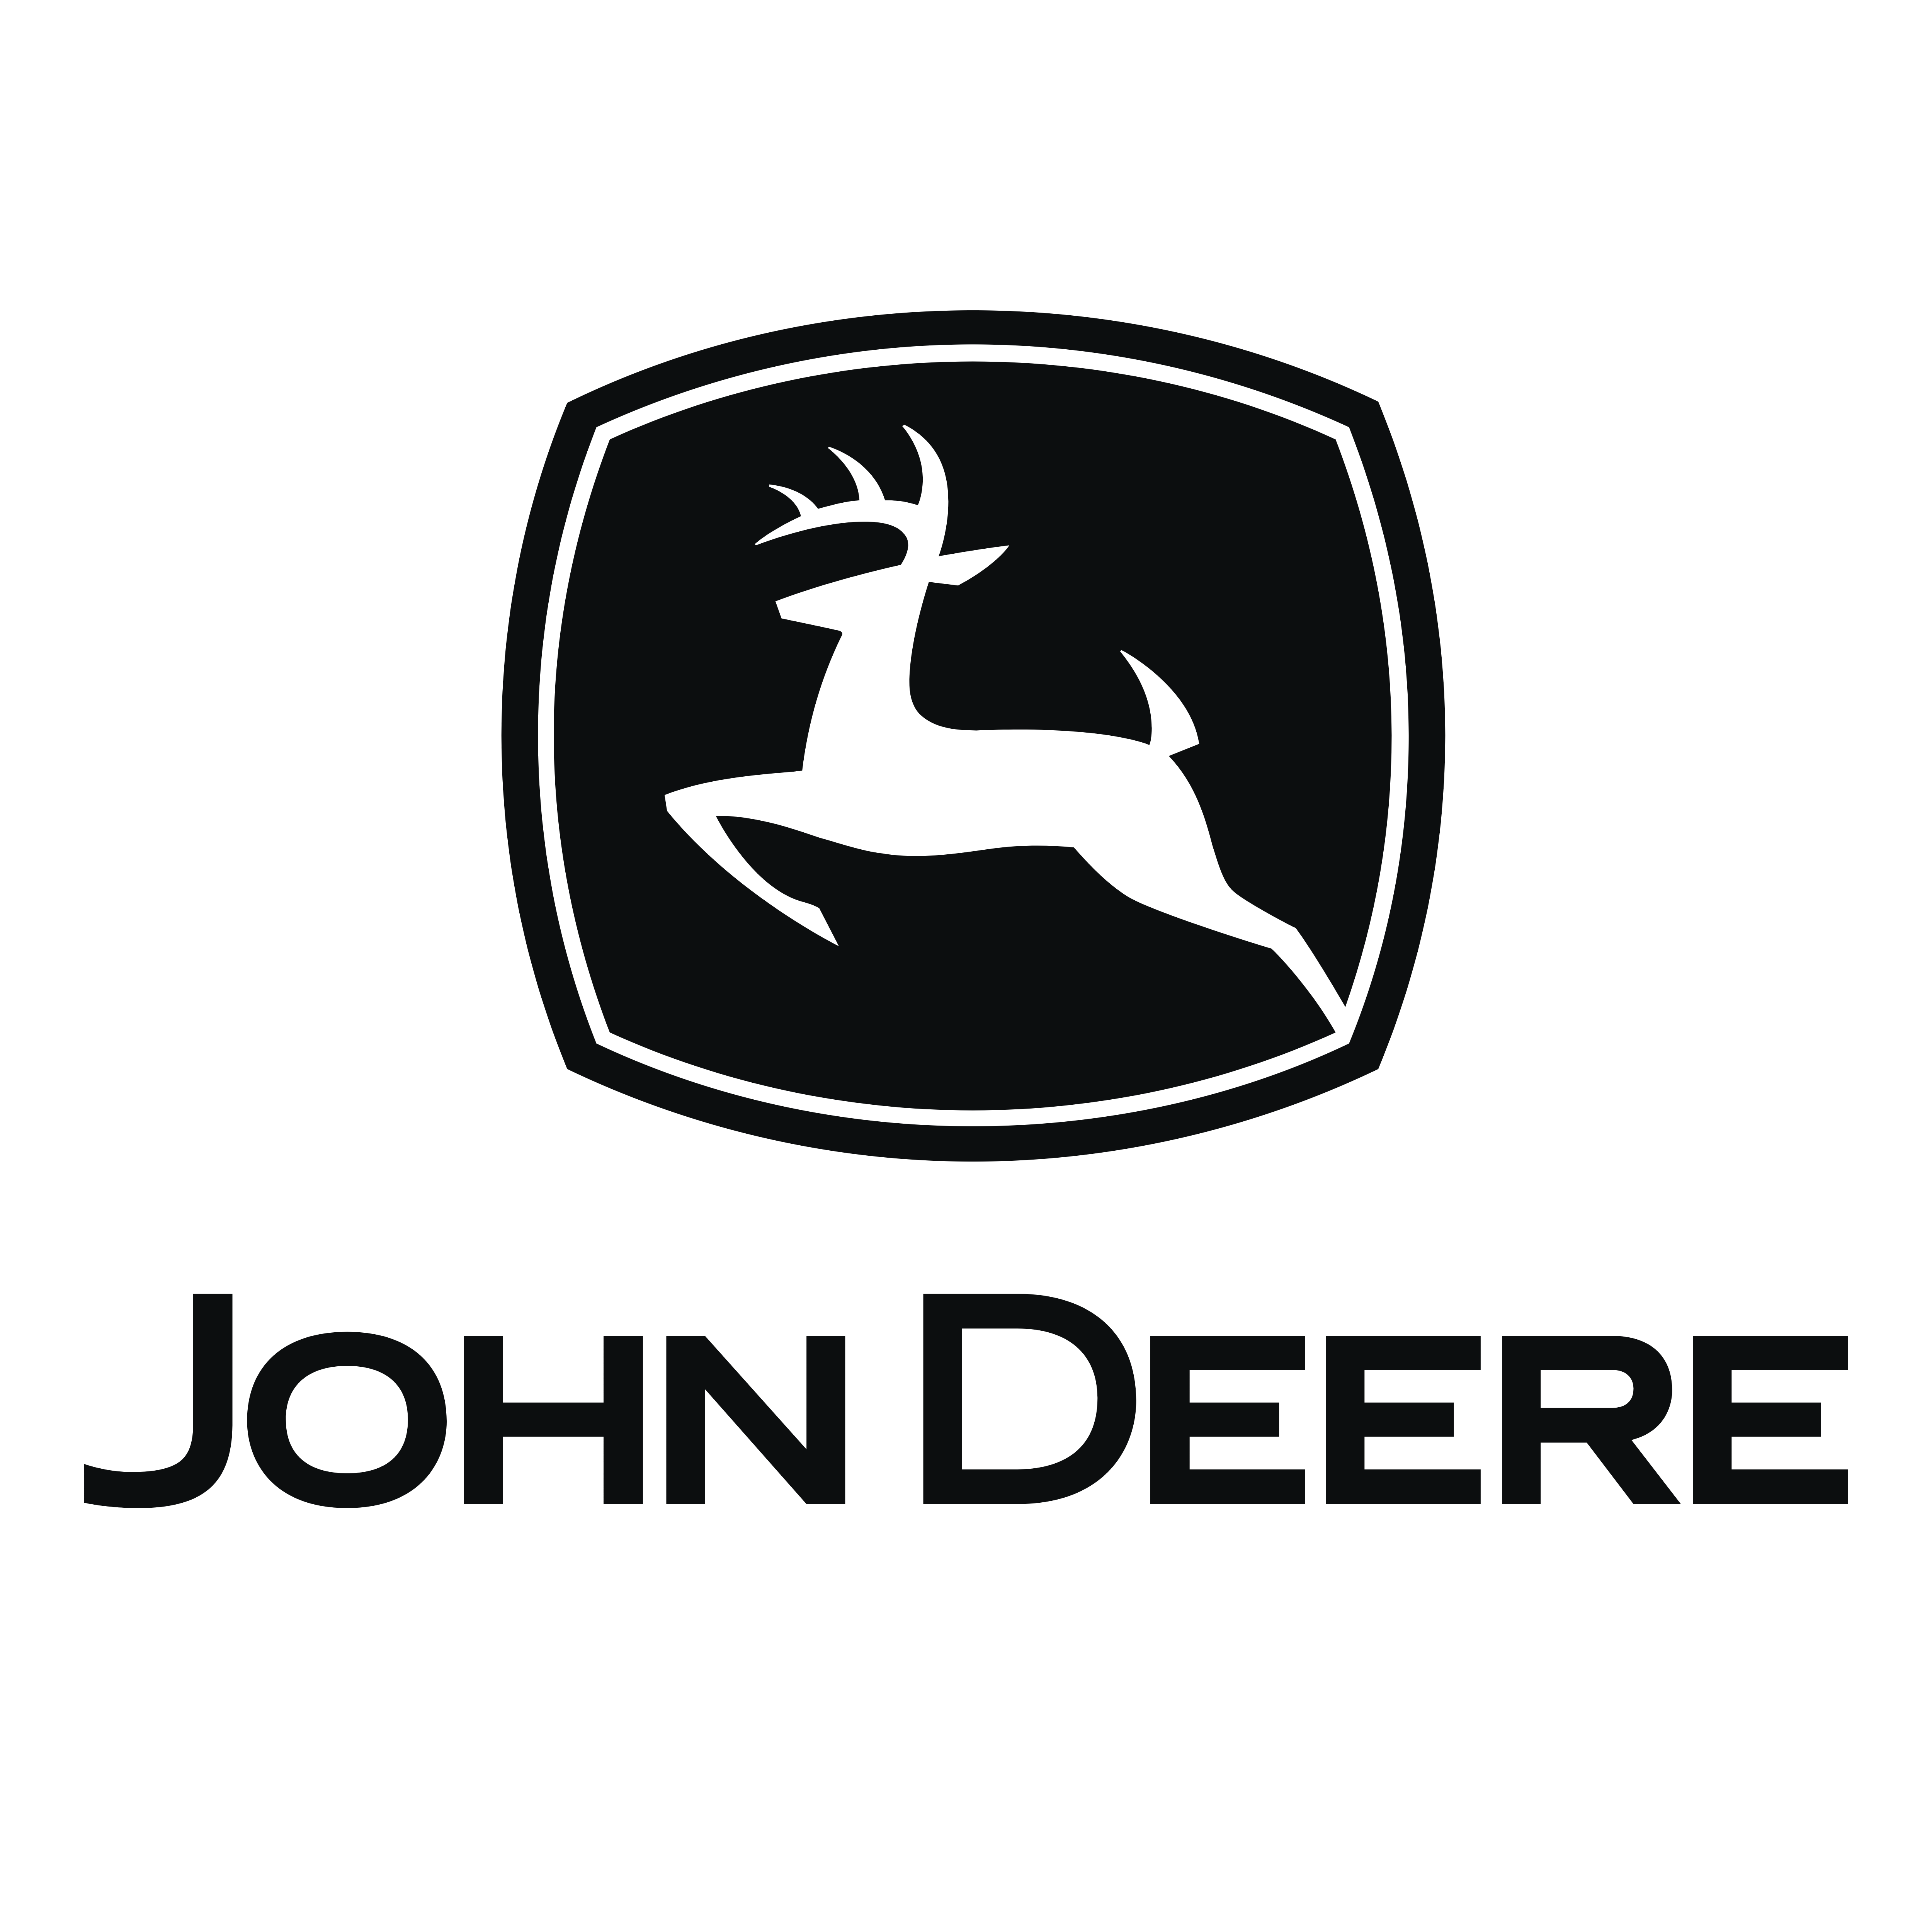 [Get 40+] High Resolution John Deere Logo Png